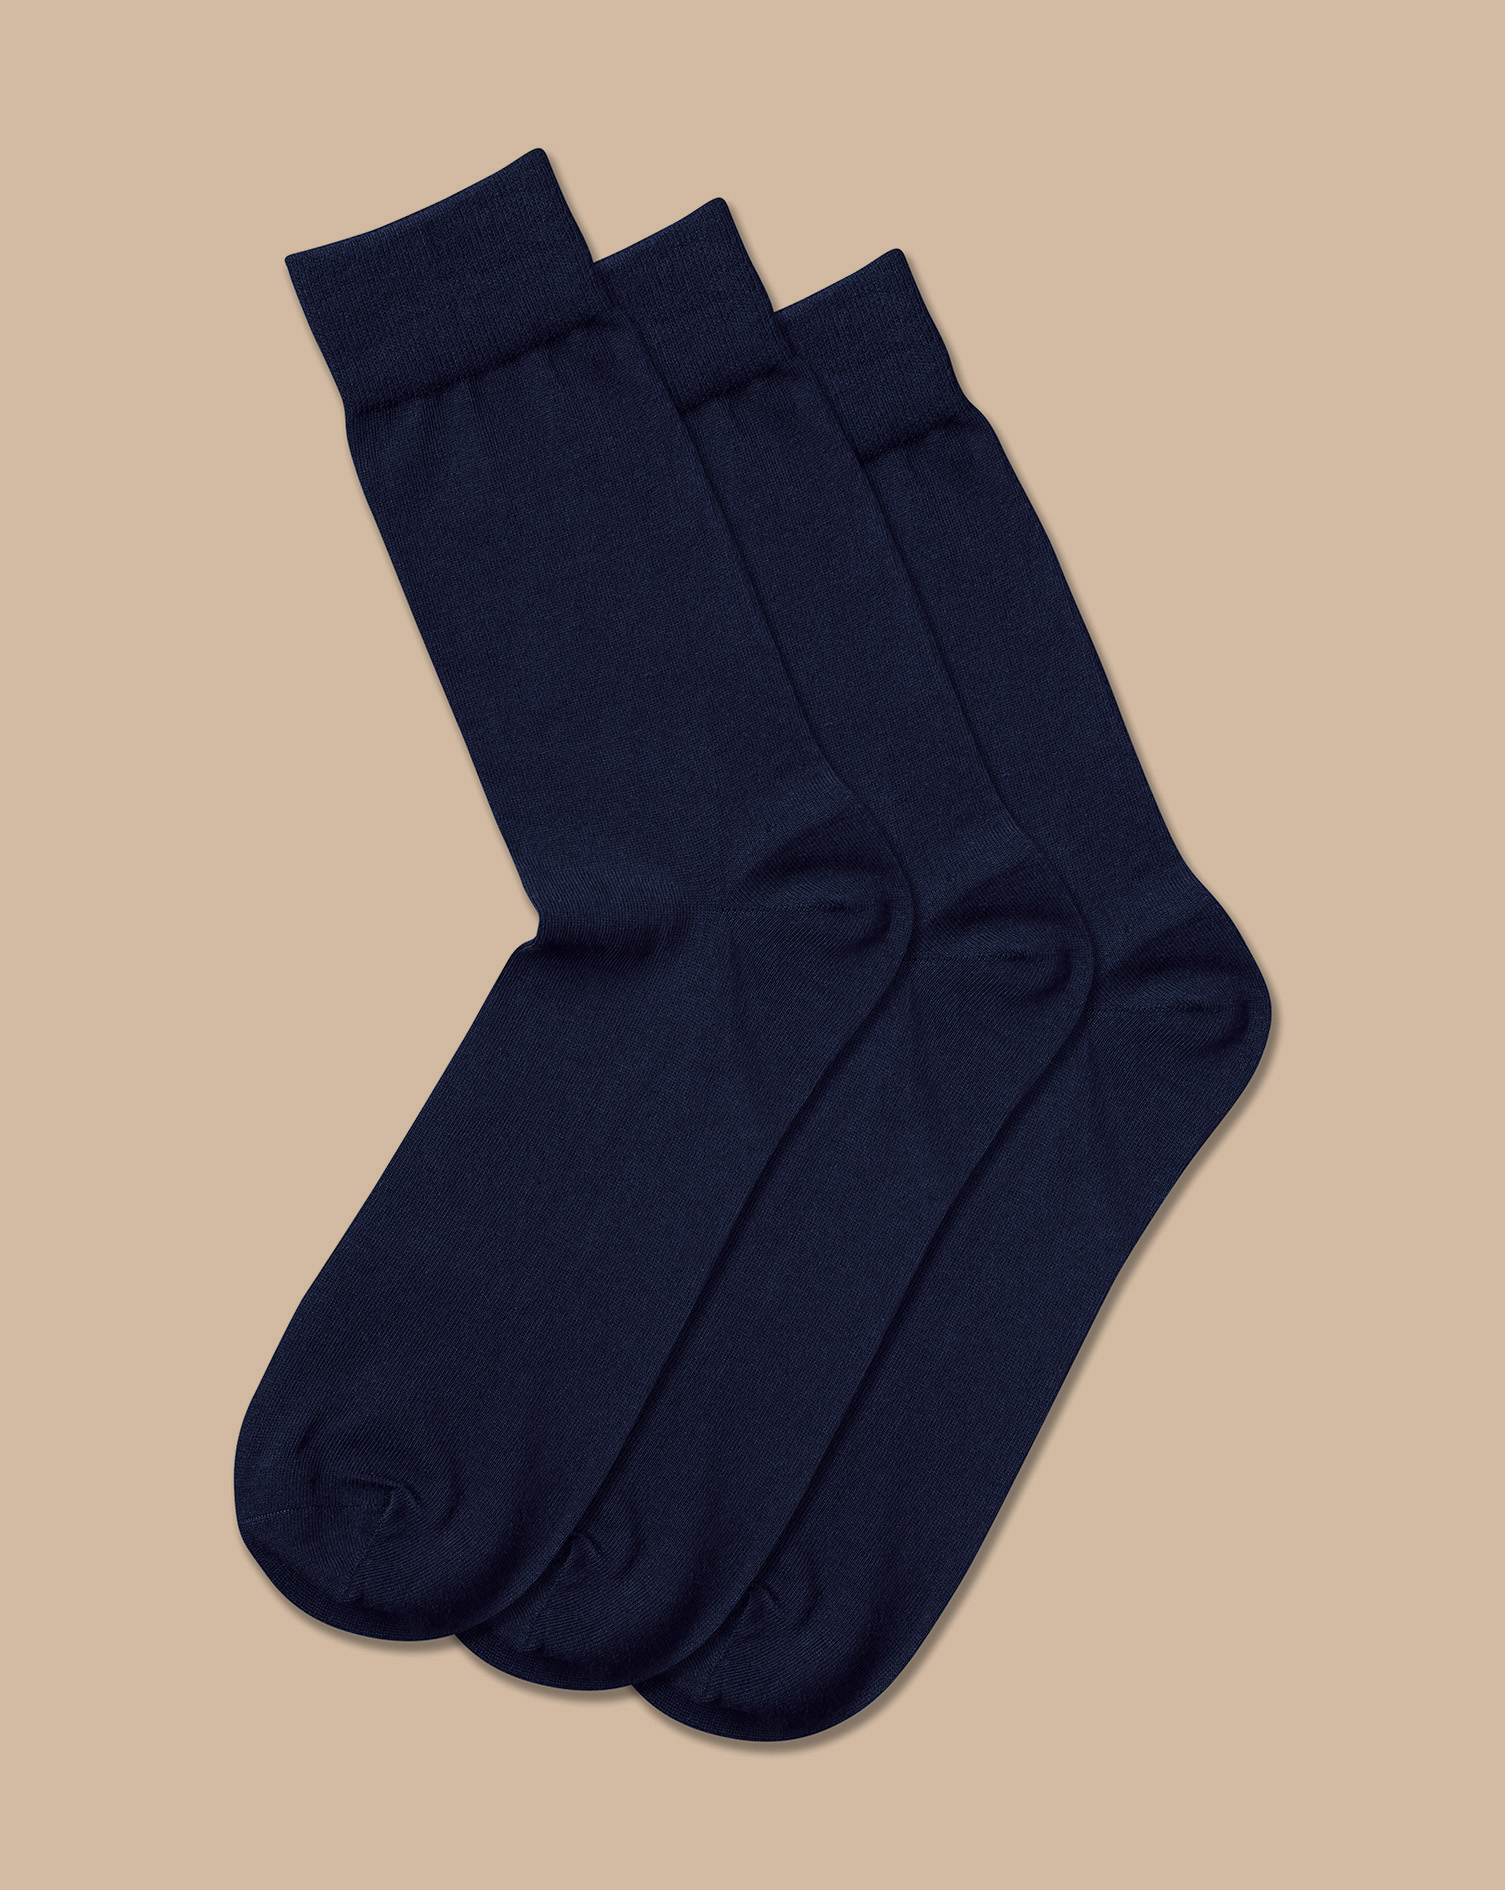 Men's Charles Tyrwhitt Rich 3 Pack Socks - Navy Blue Size 10.5-13 Cotton
